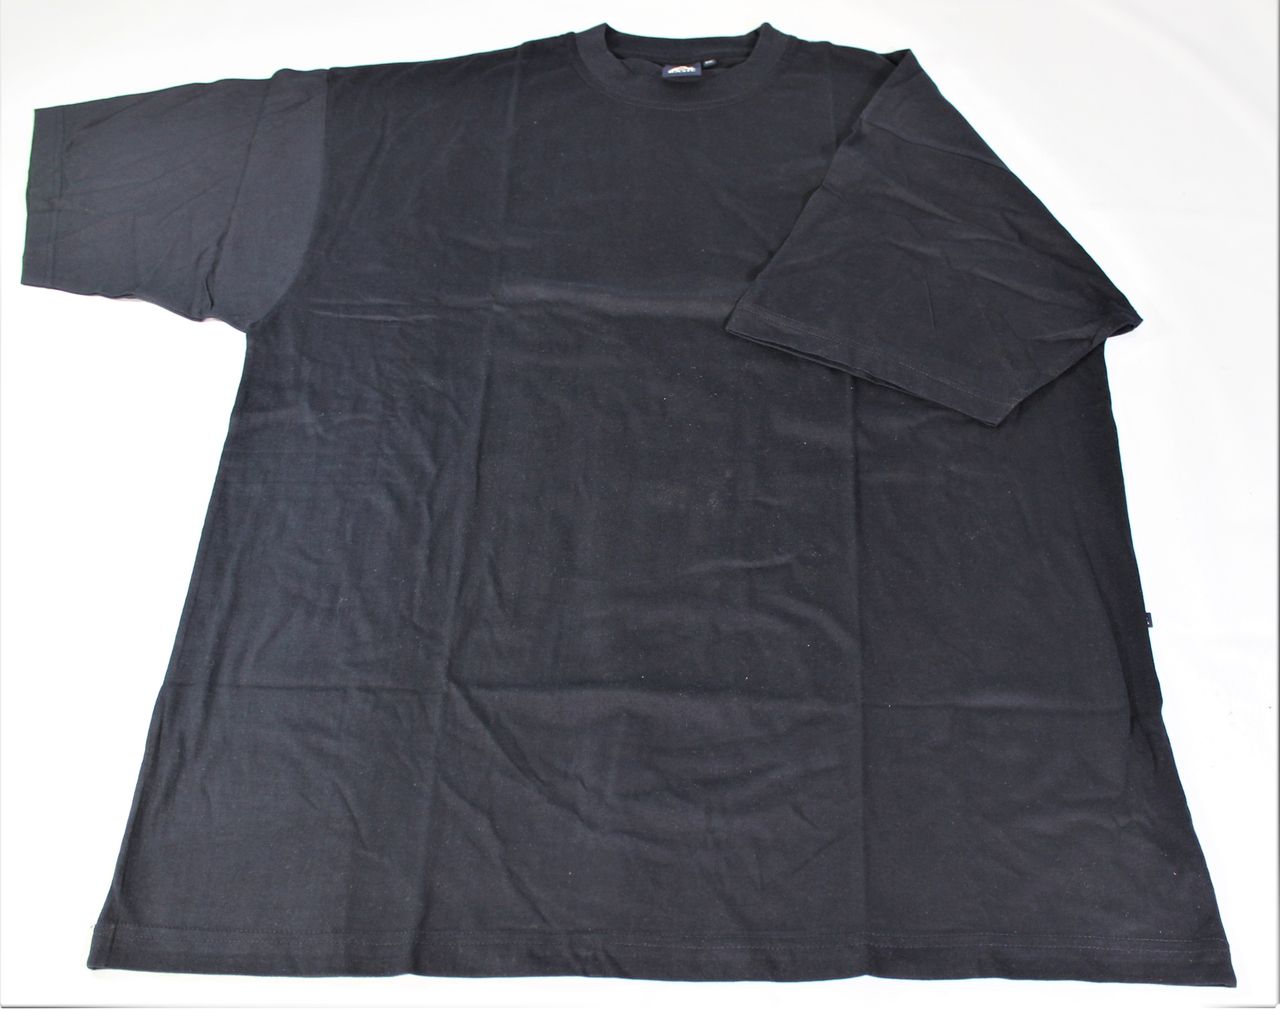 Basic Herrenshirt rundhalsausschnitt marine T-Shirt Baumwolle Baumwollshirt